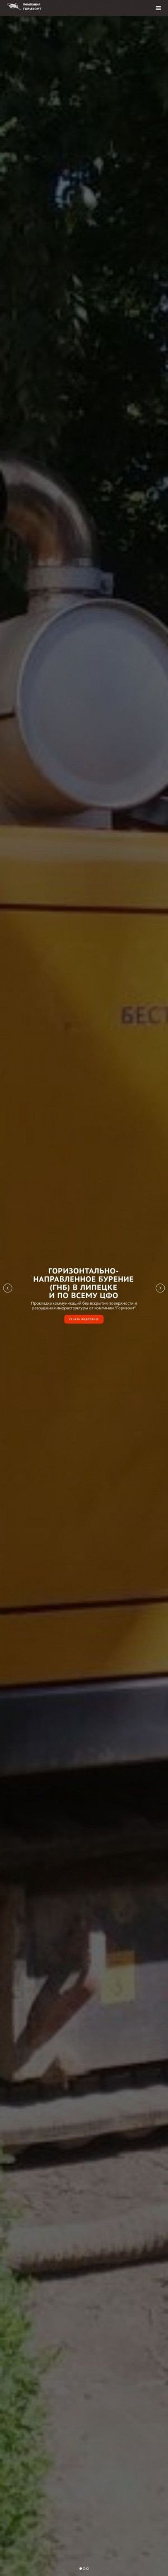 Предпросмотр для www.gorizont48.ru — Транспортная строительная компания Горизонт